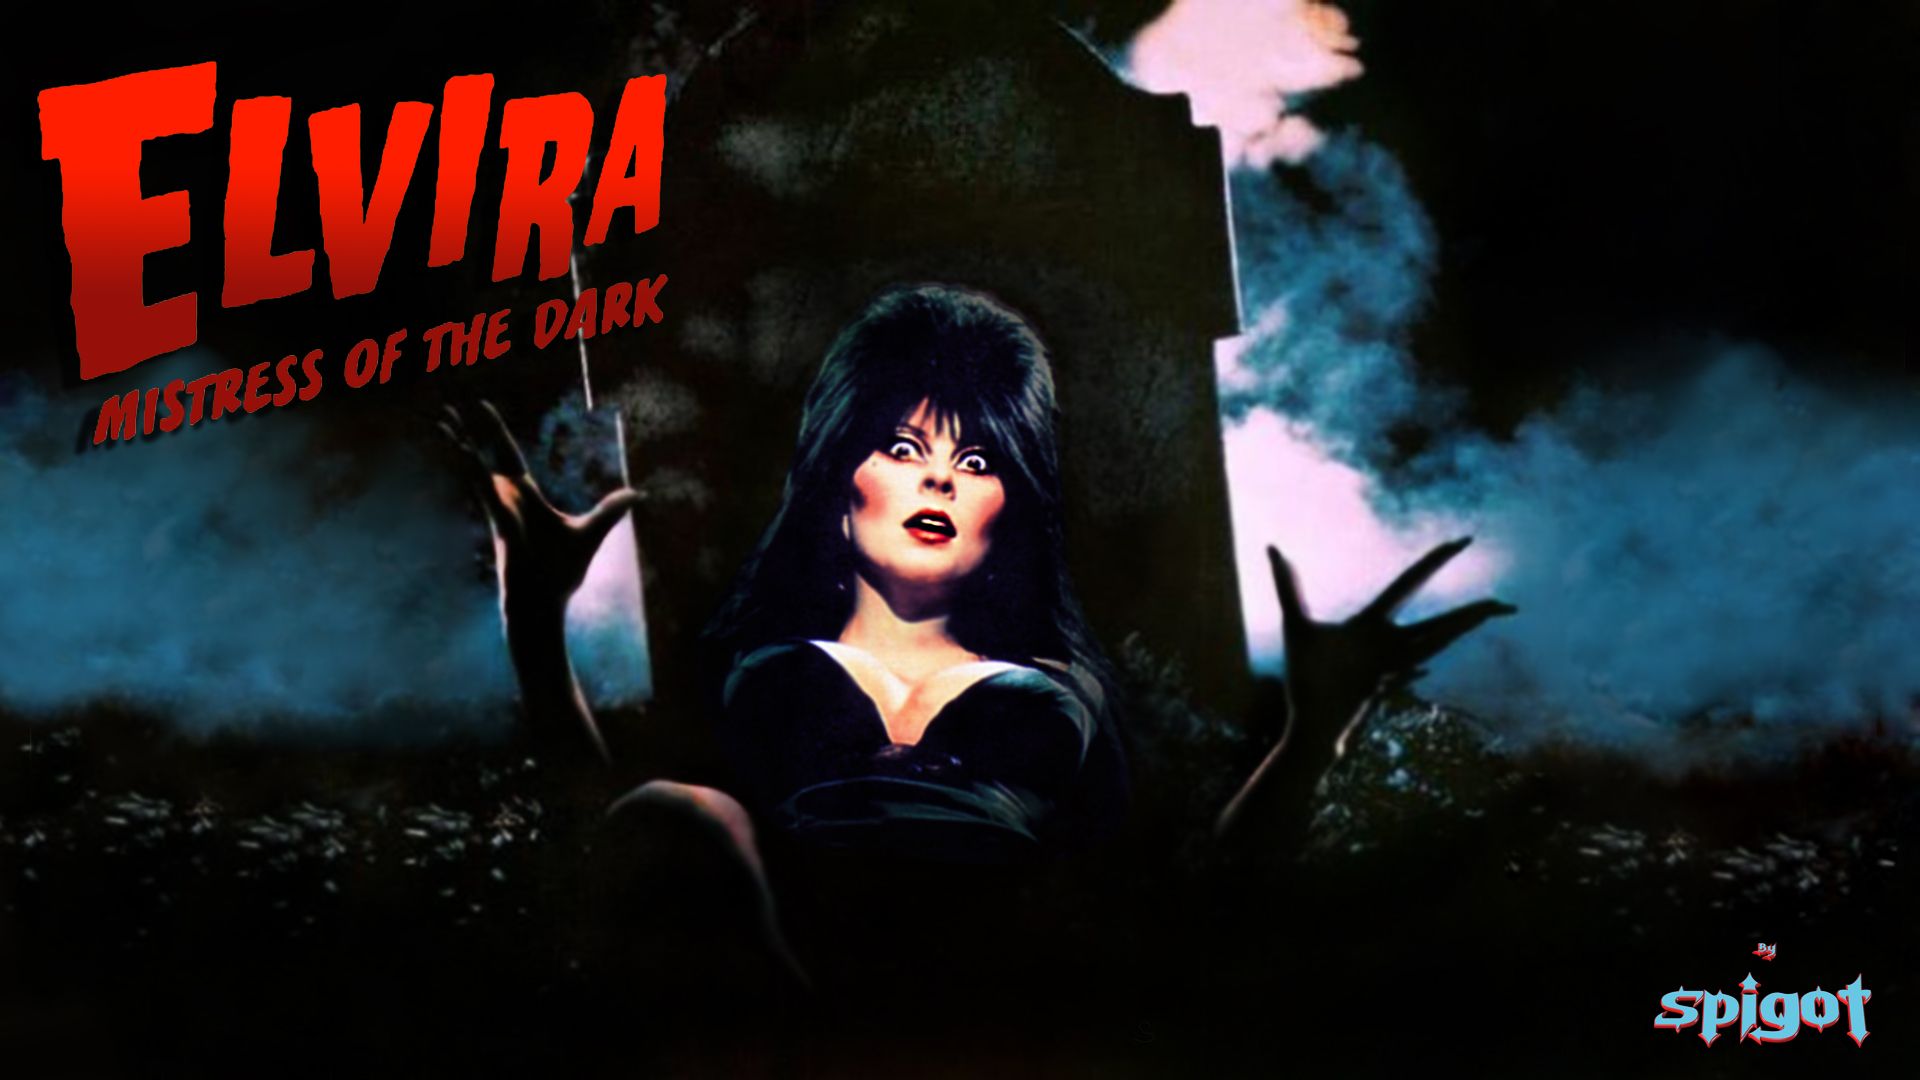 Elvira'S Movie Macabre Wallpapers